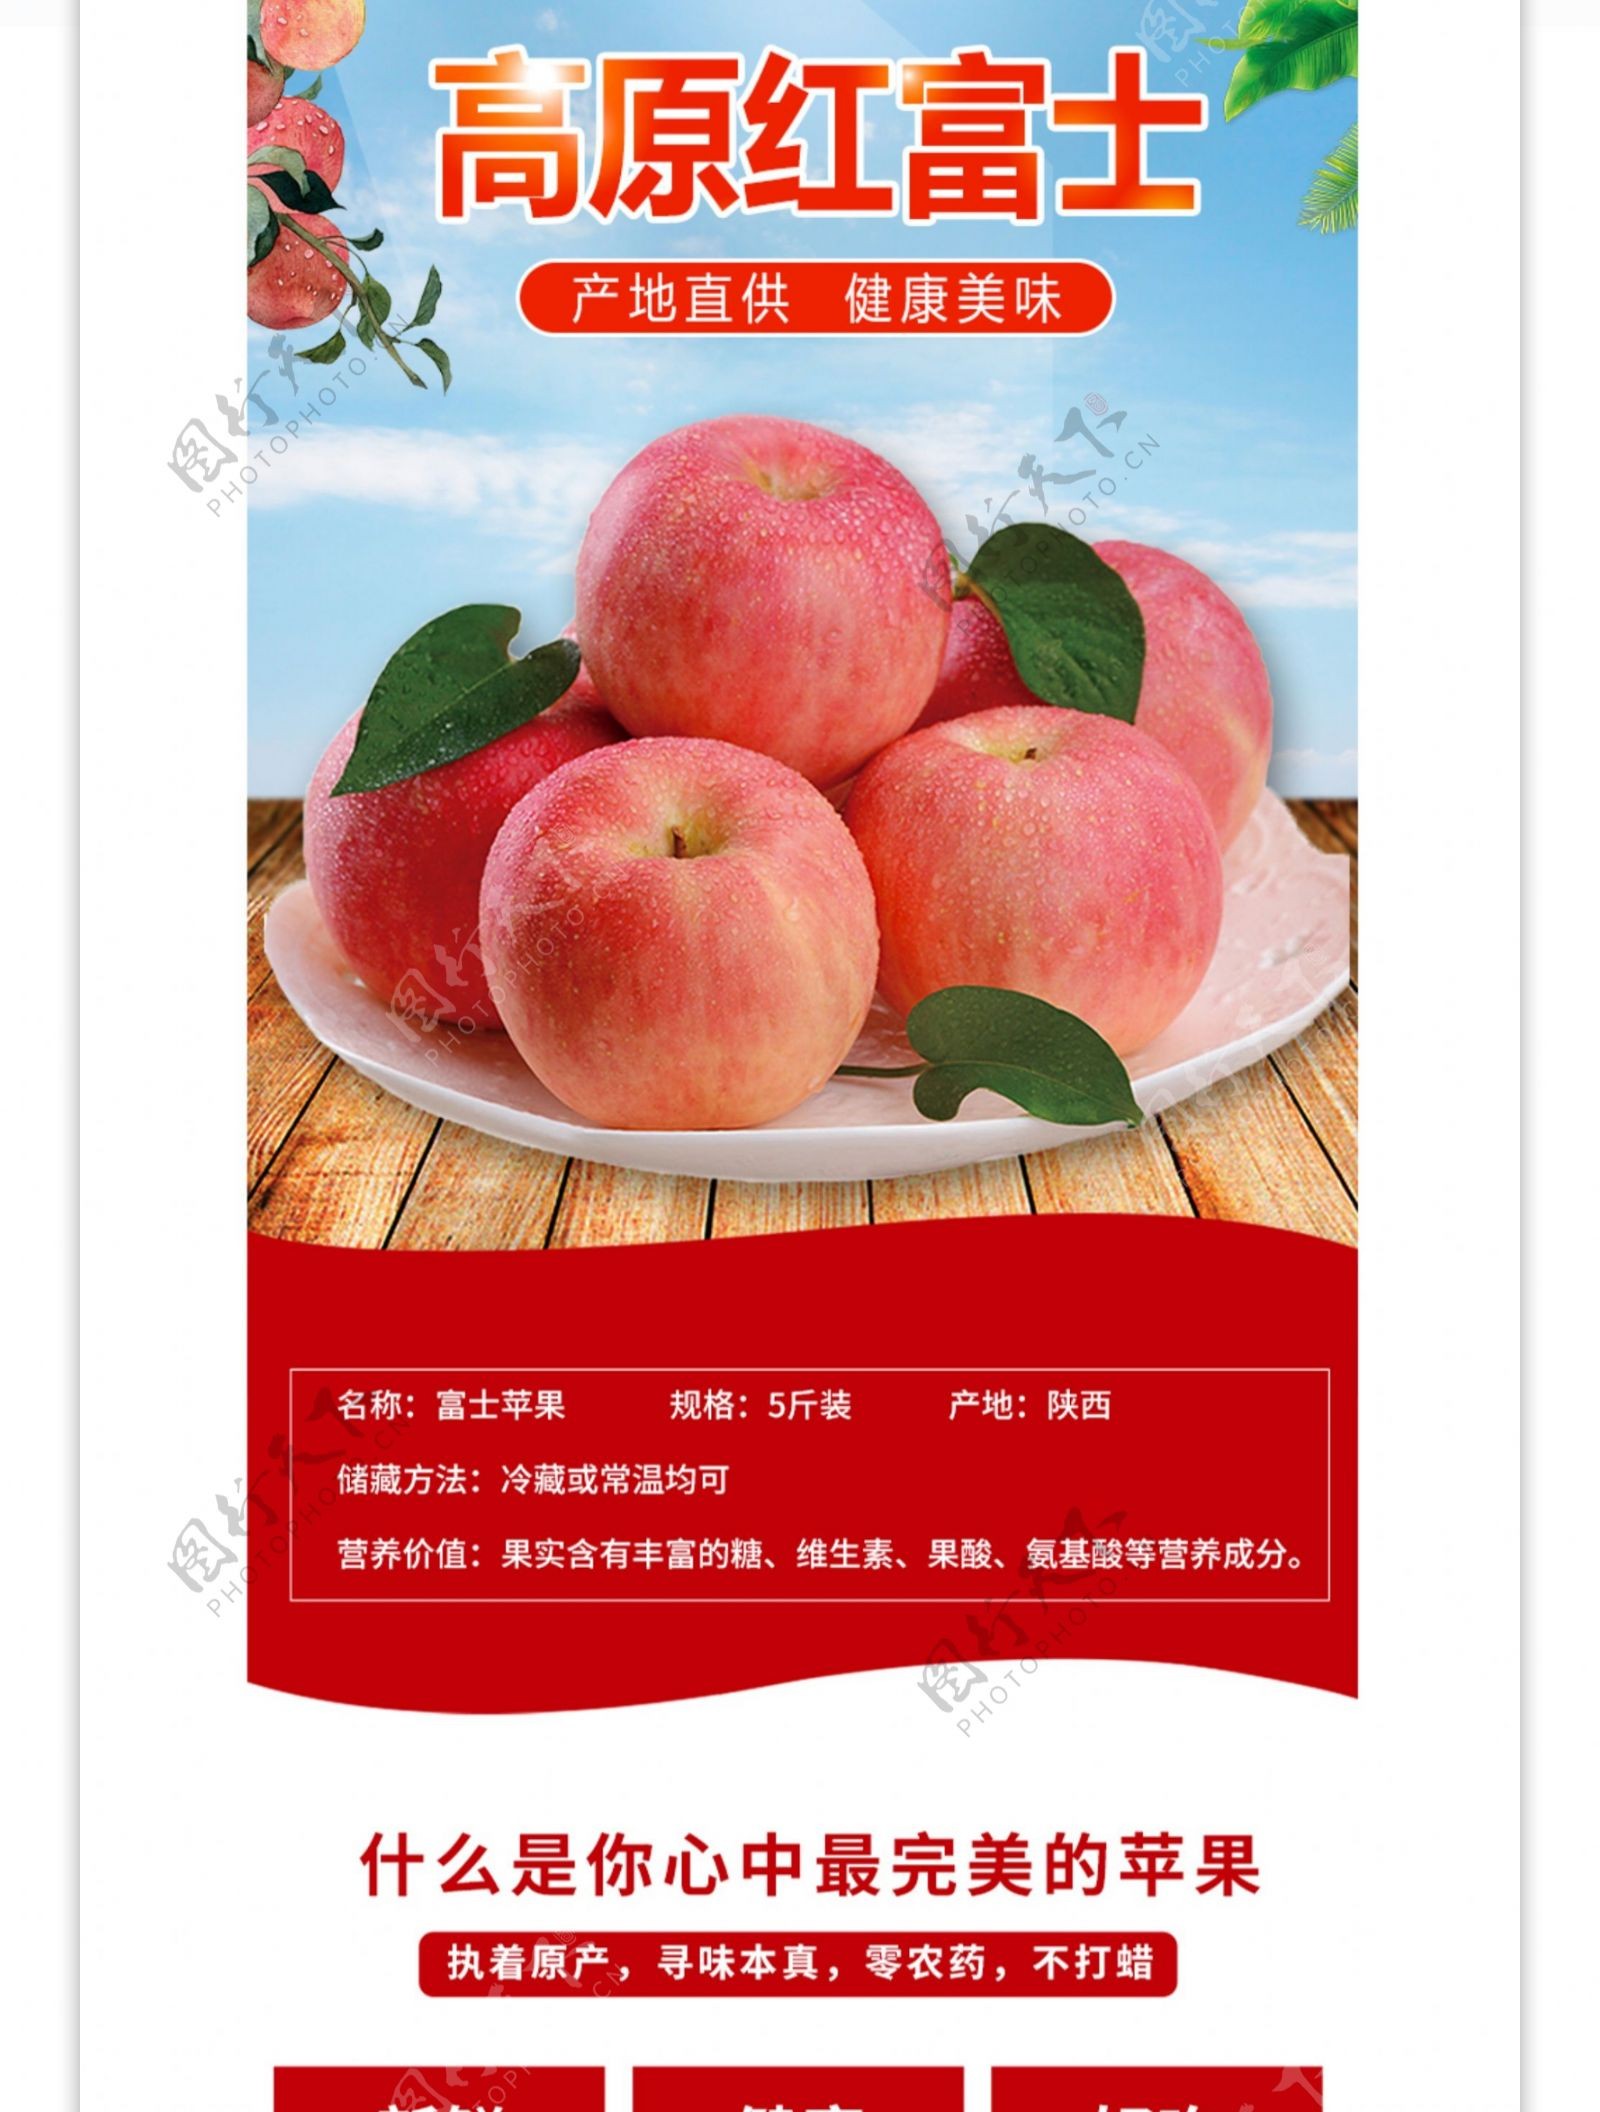 富士苹果清新夏季水果详情页